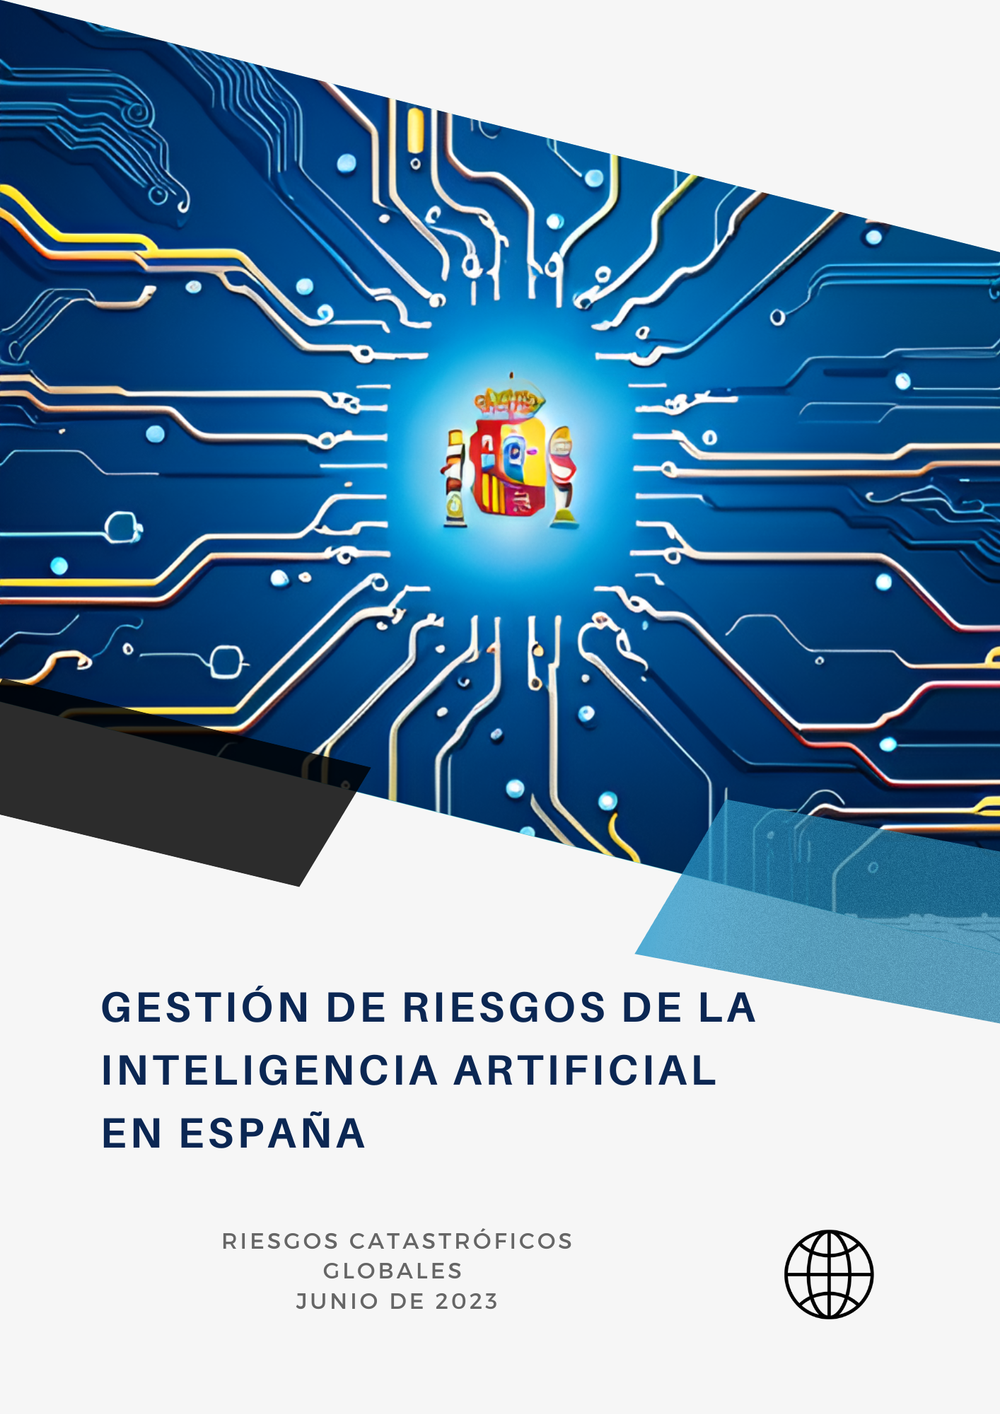 Copia de Gestión de riesgos de la IA en España (1).png